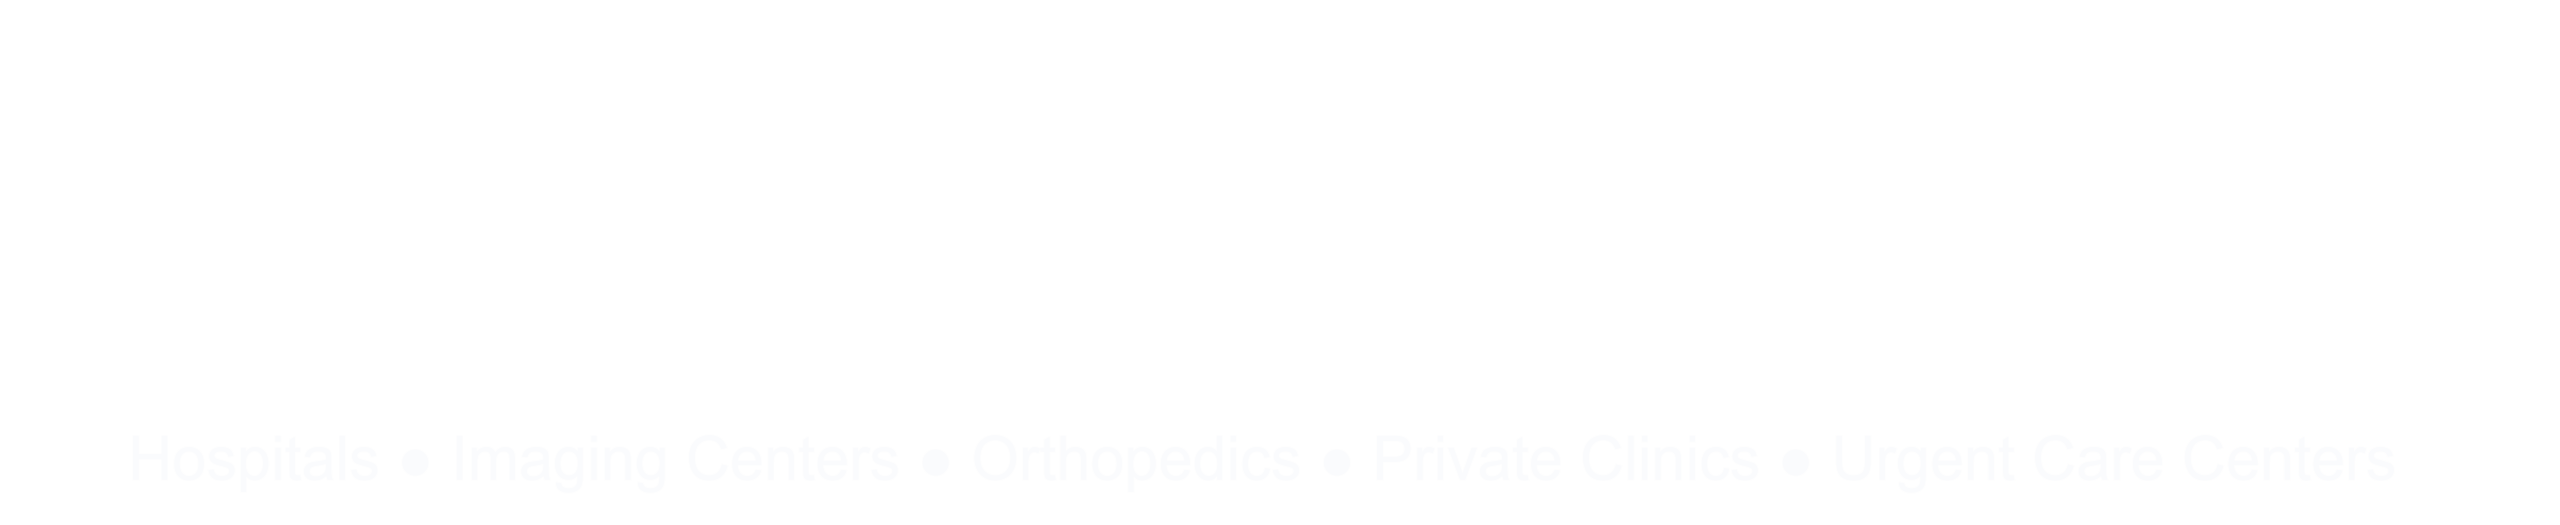 Amrad-Medical-Logo-White-Large-applications1